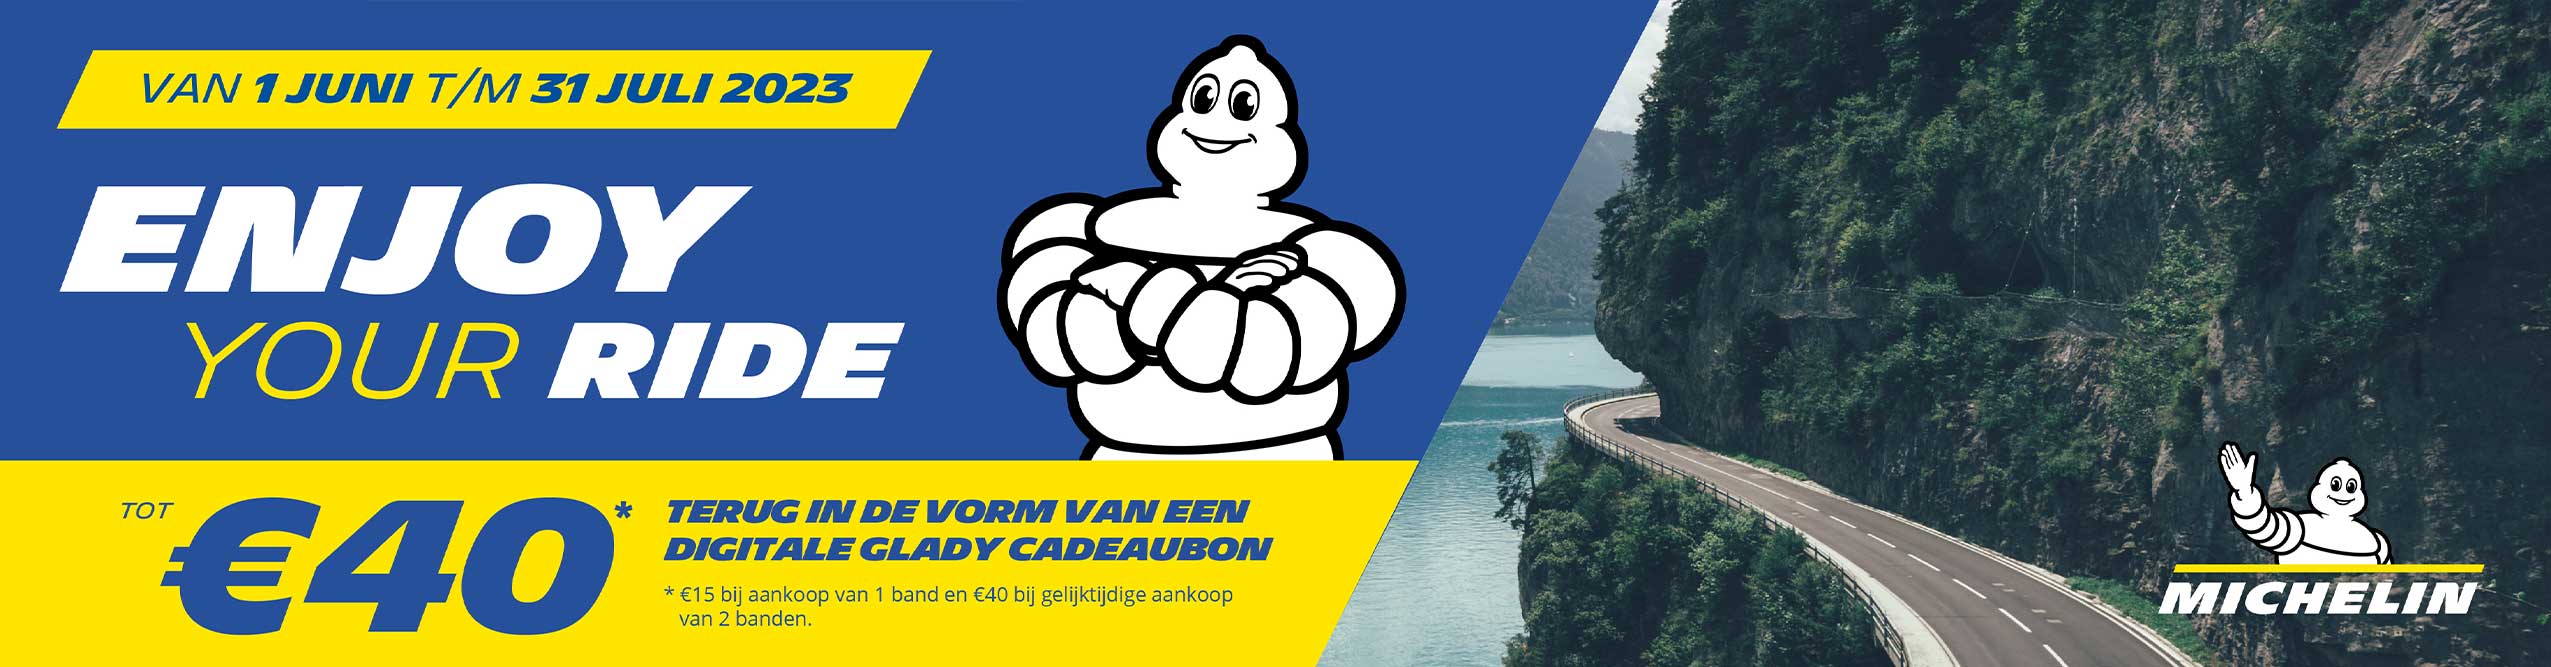 Vorm van het schip Minimaliseren Mona Lisa Michelin bandenvoordeel: tot € 40,- cashback! - Motorplaza